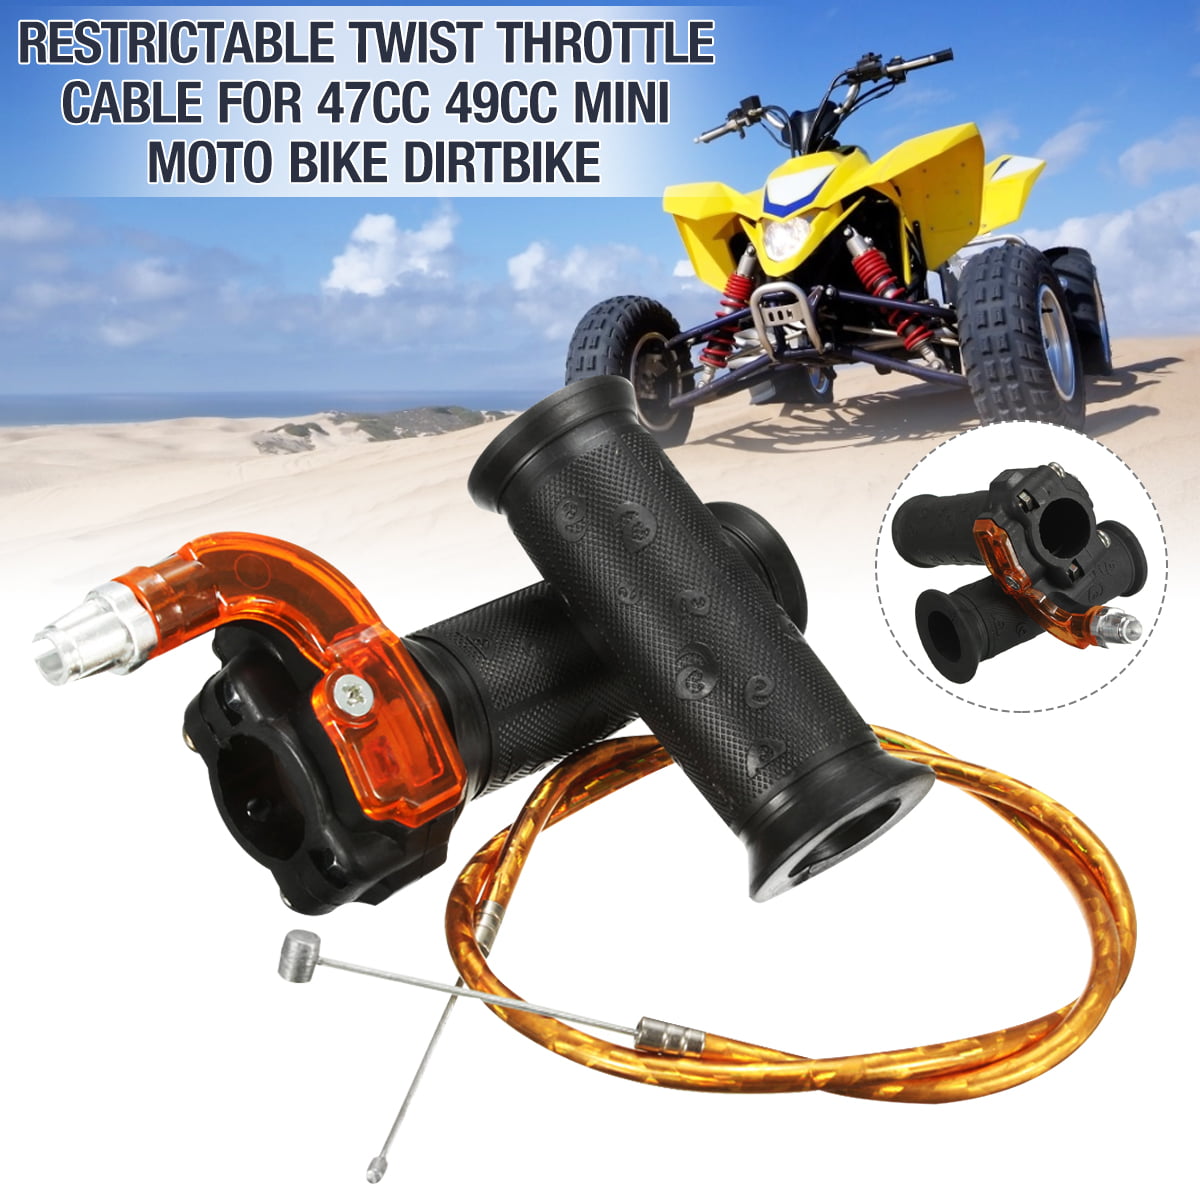 Restrictable Throttle Cable For 47CC 49cc Mini Moto Pit Dirt Bike Quad Universal 